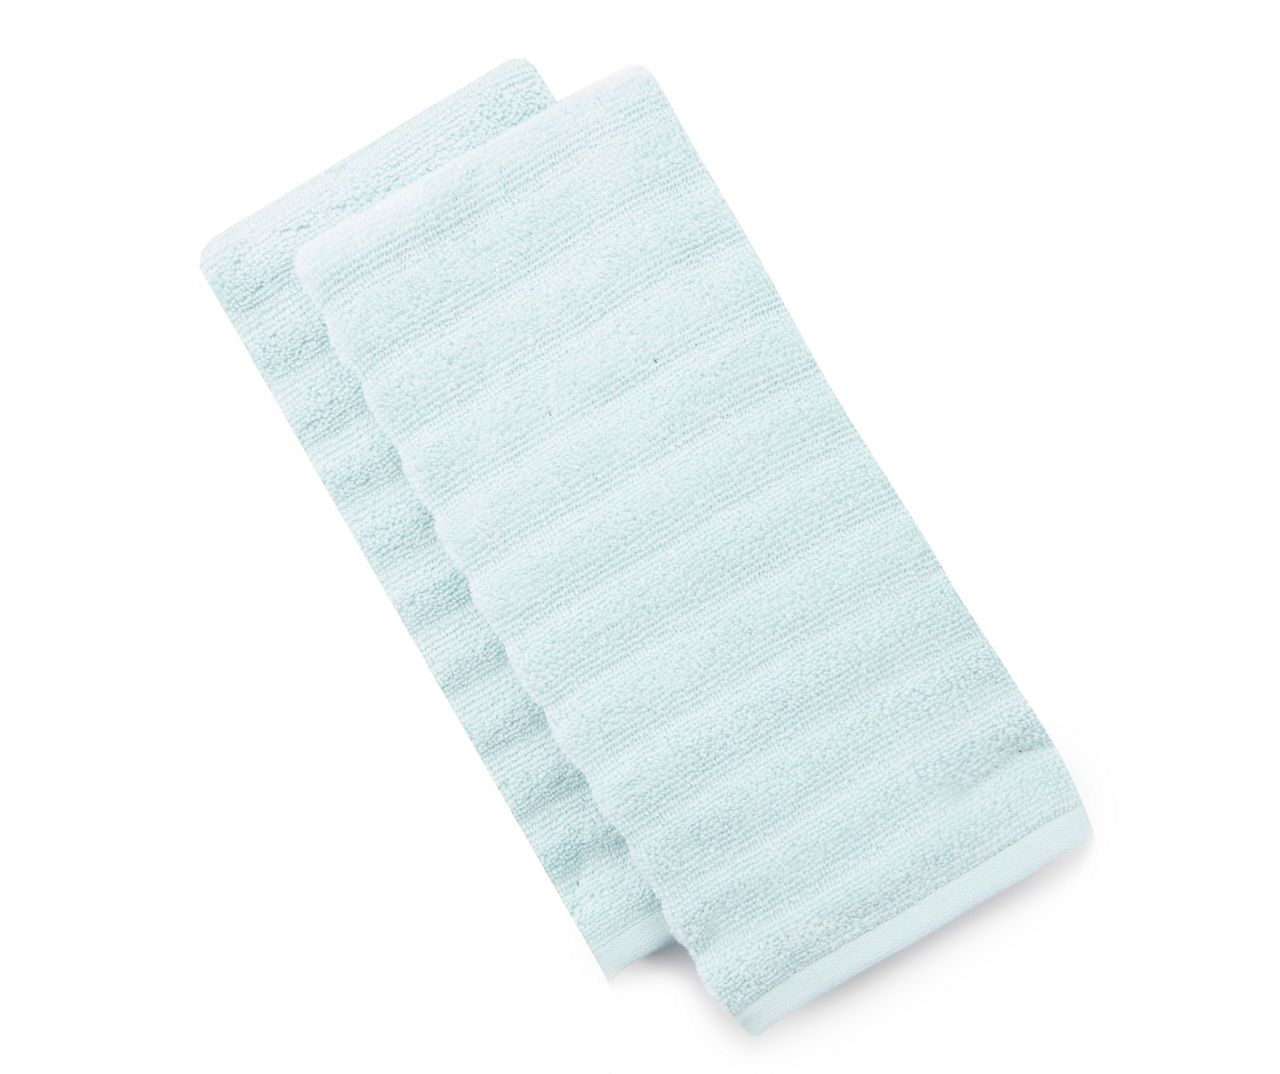 FS 2PK HAND TOWELS - LT BLUE